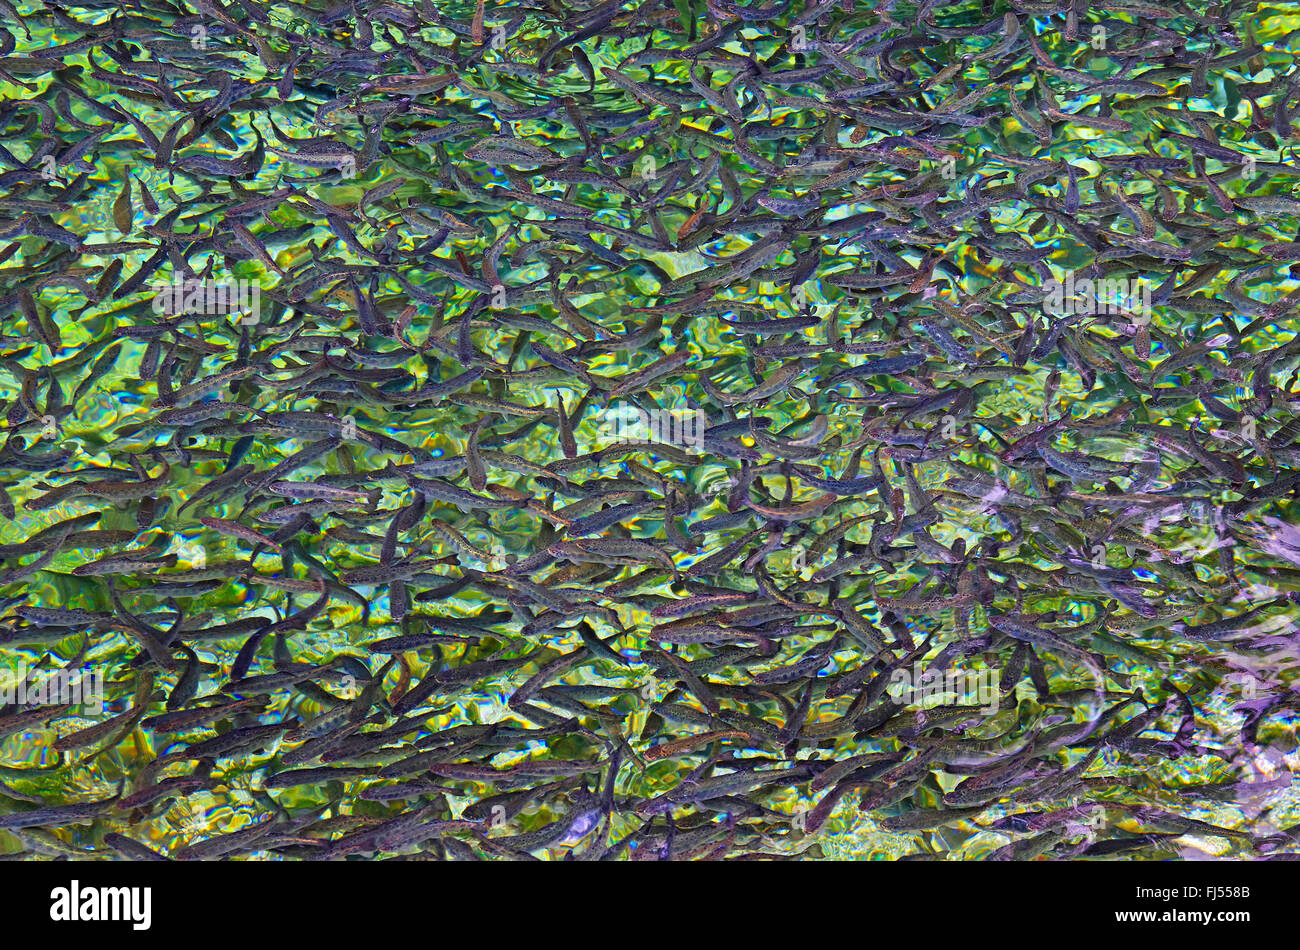 La trota fario trota di fiume, trota di fiume (Salmo trutta fario), allevamento di trote, laghetto con pesci, secca di trote, Germania Foto Stock